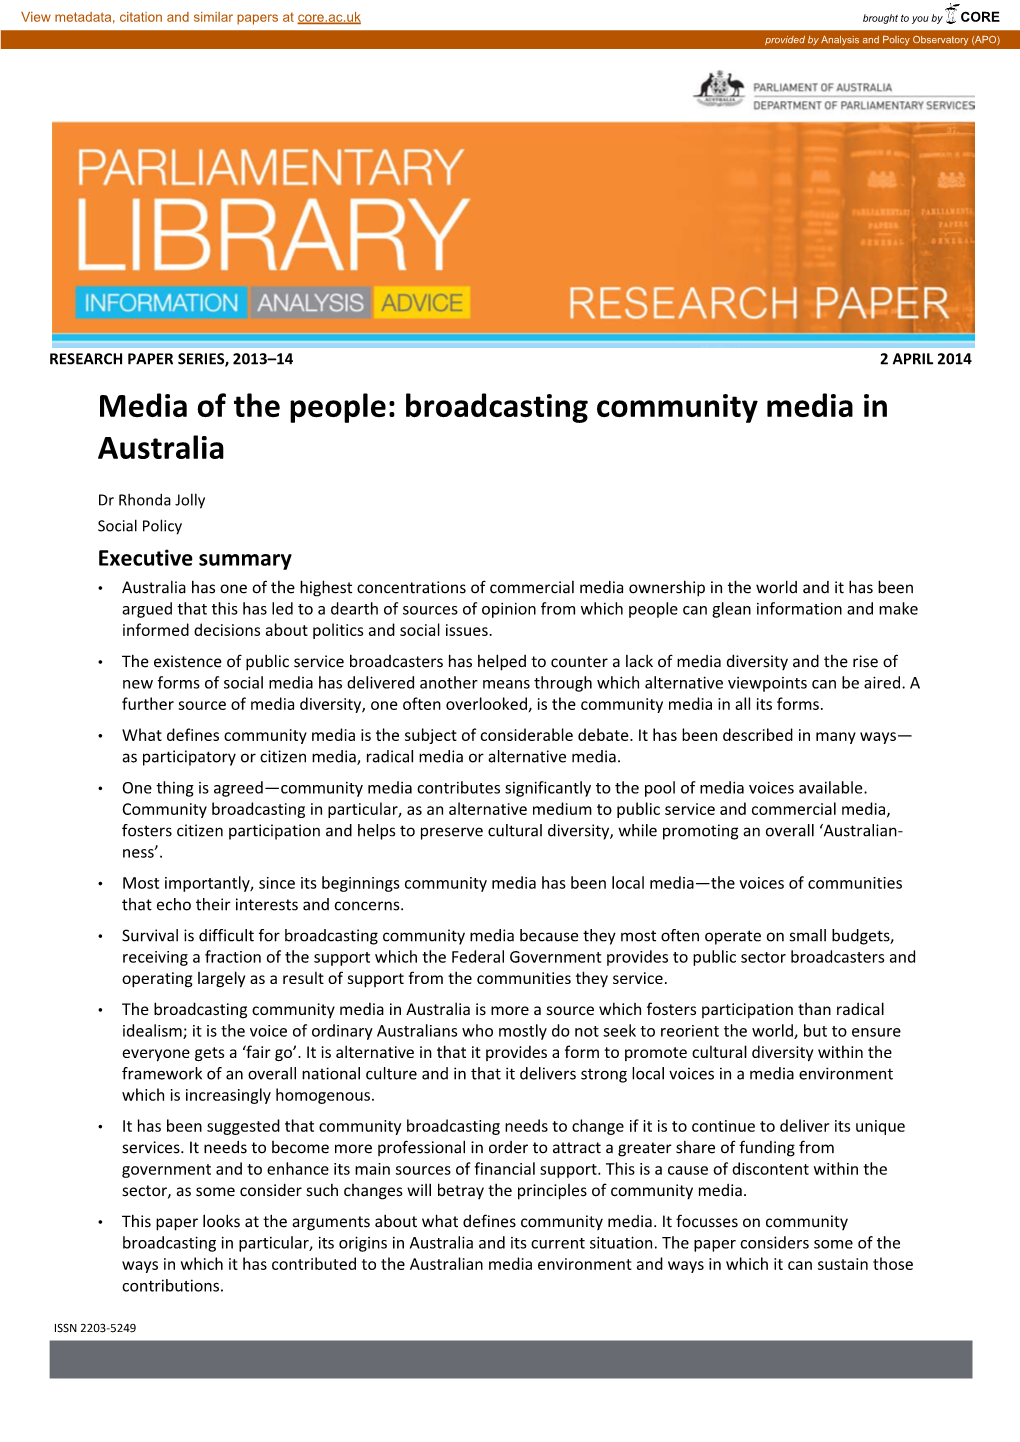 Broadcasting Community Media in Australia